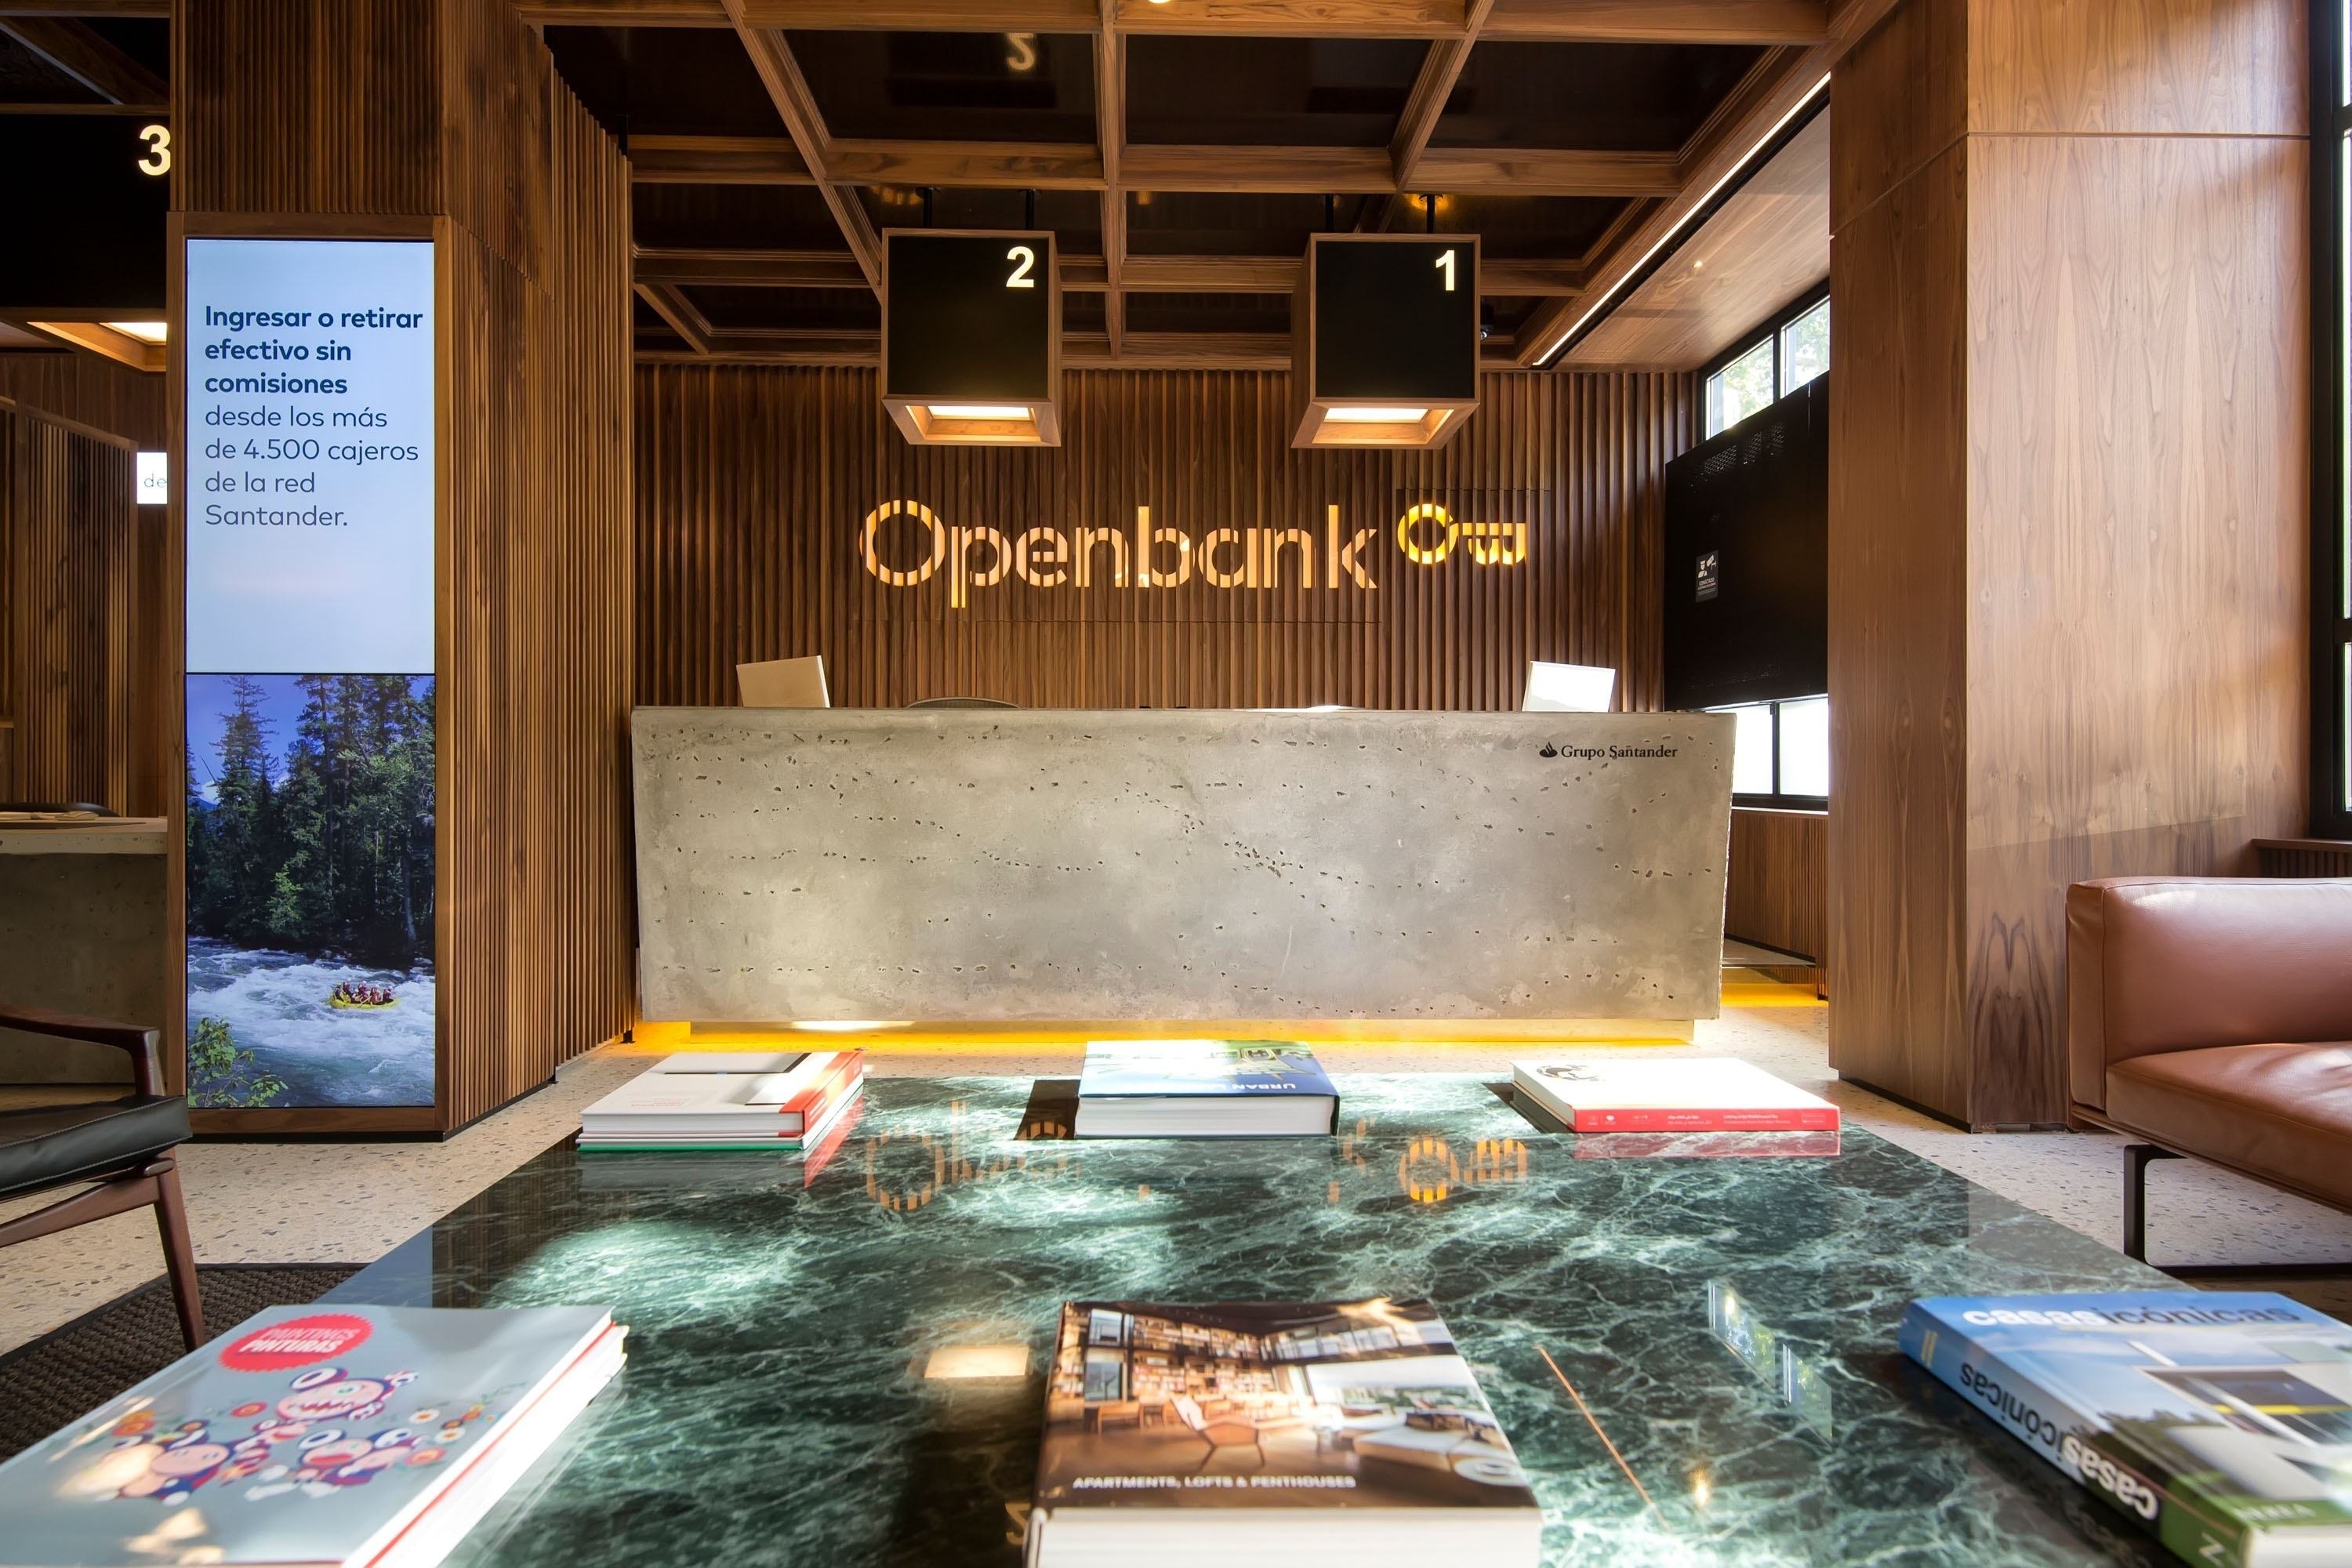 Openbank regala fins a 400.000 euros en premis als qui contractin el seu dipòsit al 3,07%